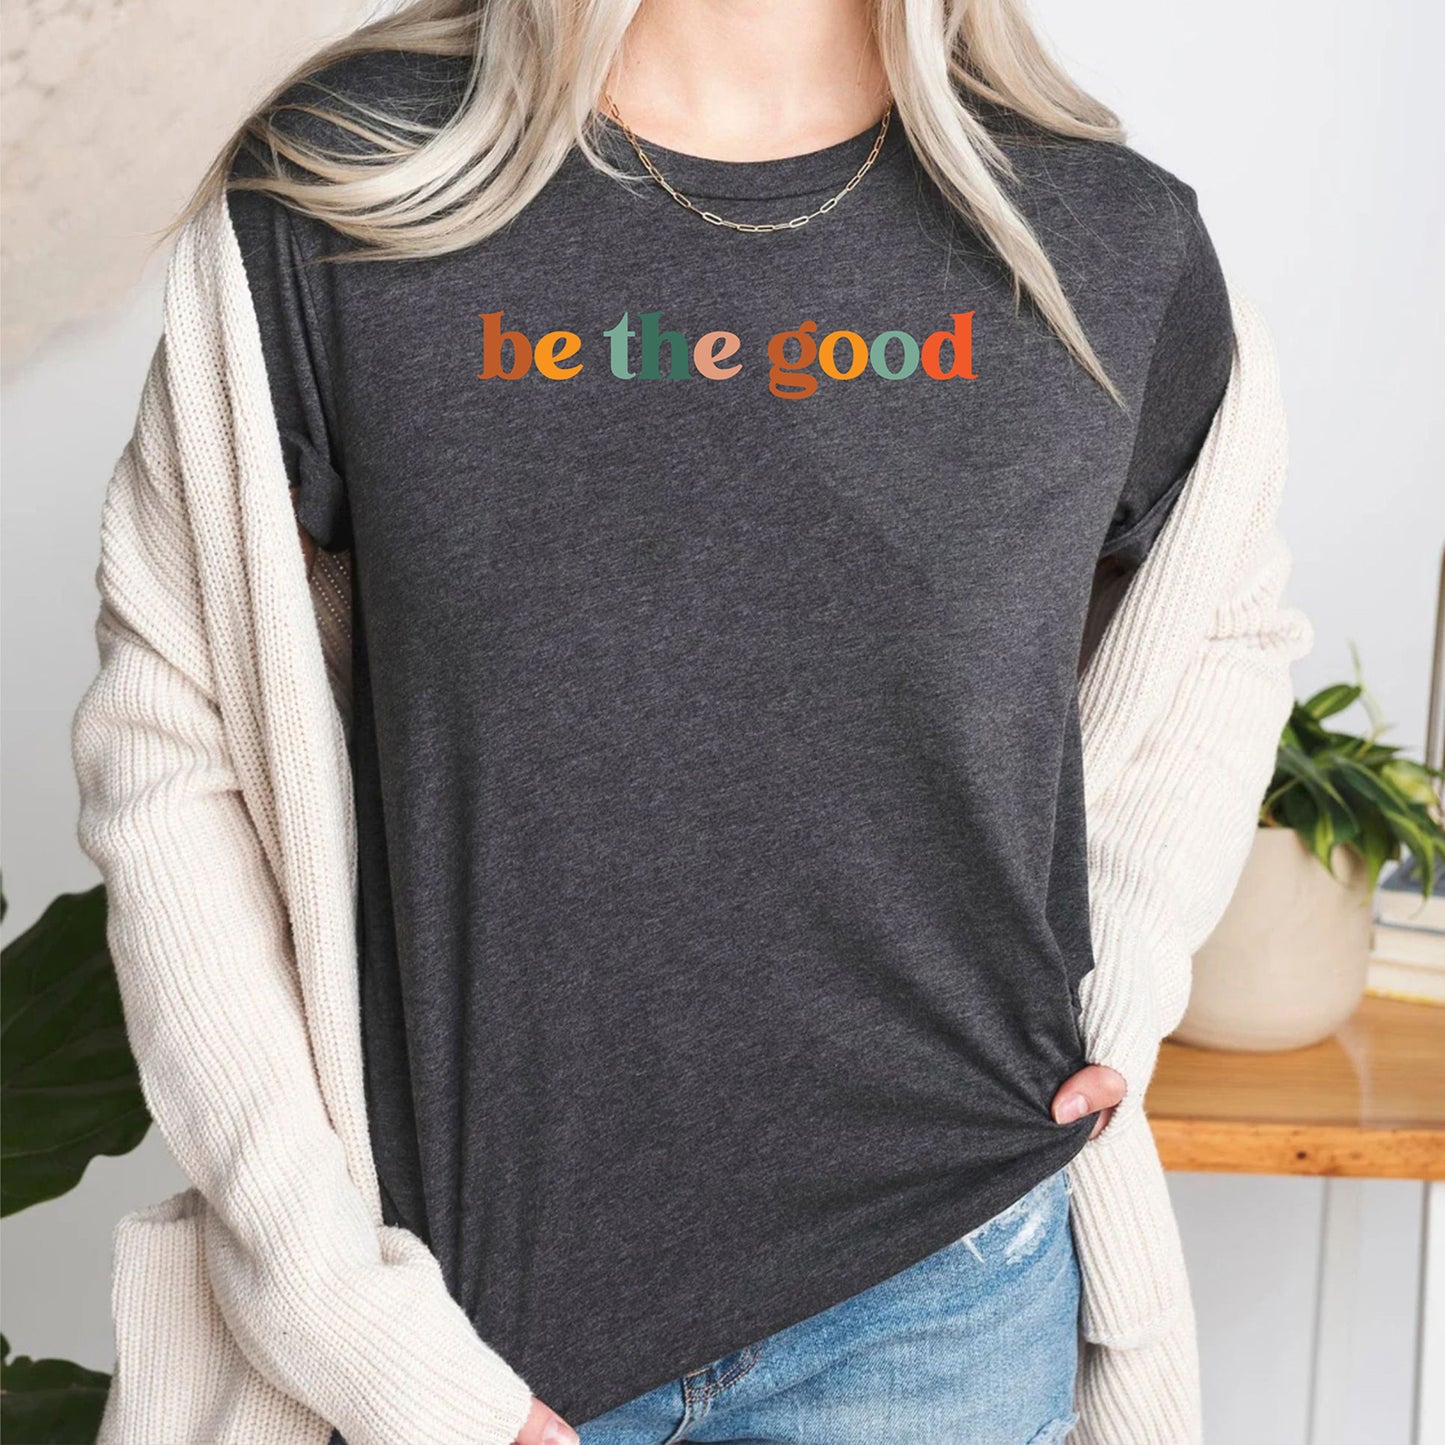 Be The Good Inspirational Retro Cute Teacher Preschool Teacher T-Shirt